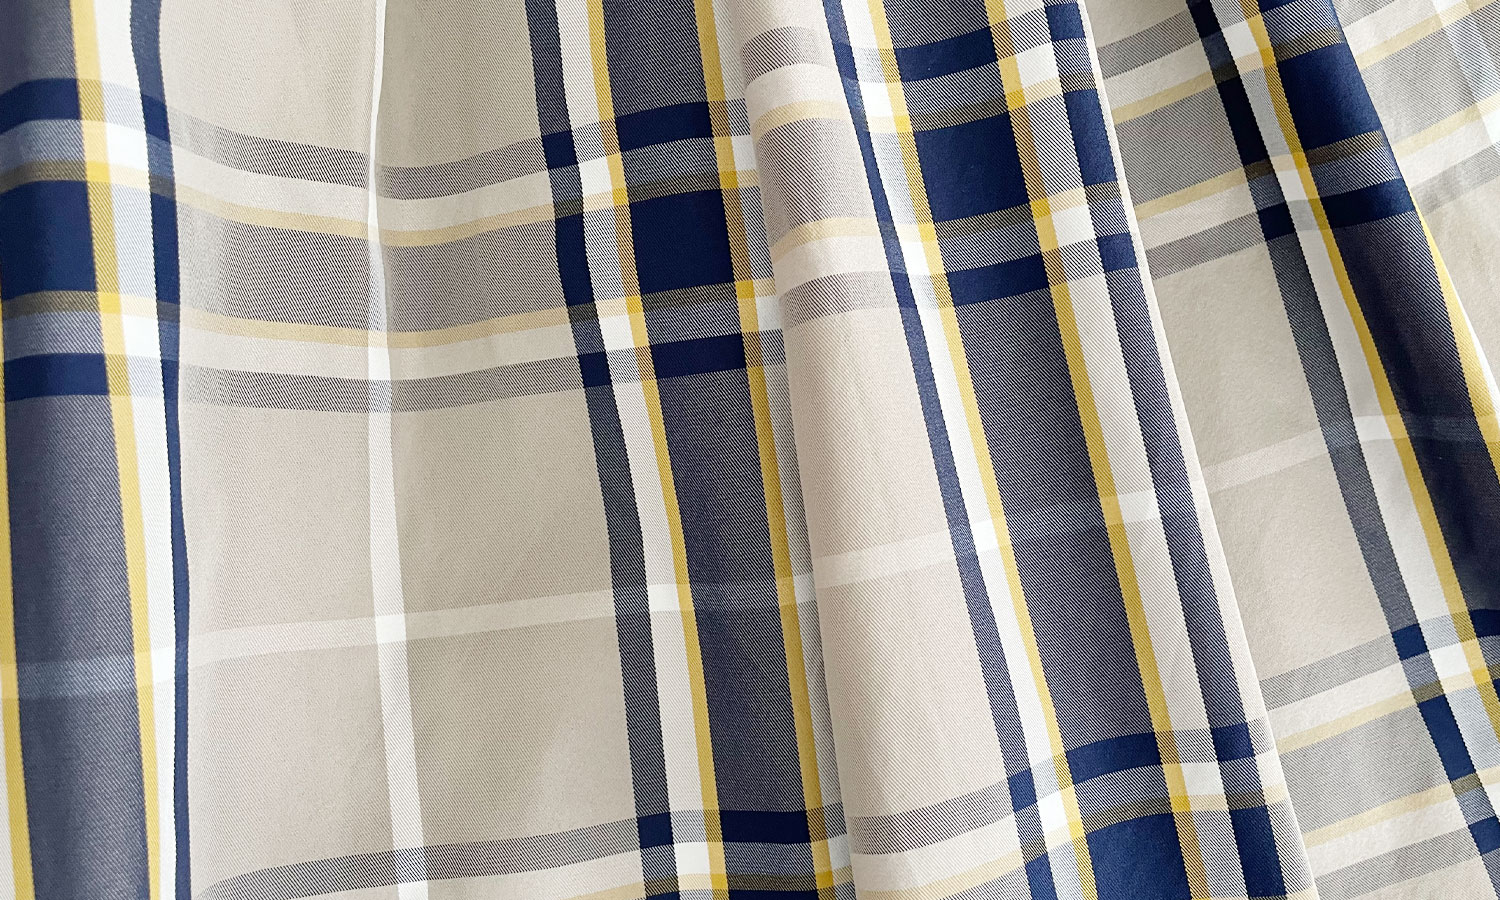 ベージュよりのグレーをベースに薄いネイビーと白・黄色のラインが上品に見えるTRECODEの神戸・山の手チェック柄スカート グレー×ネイビー